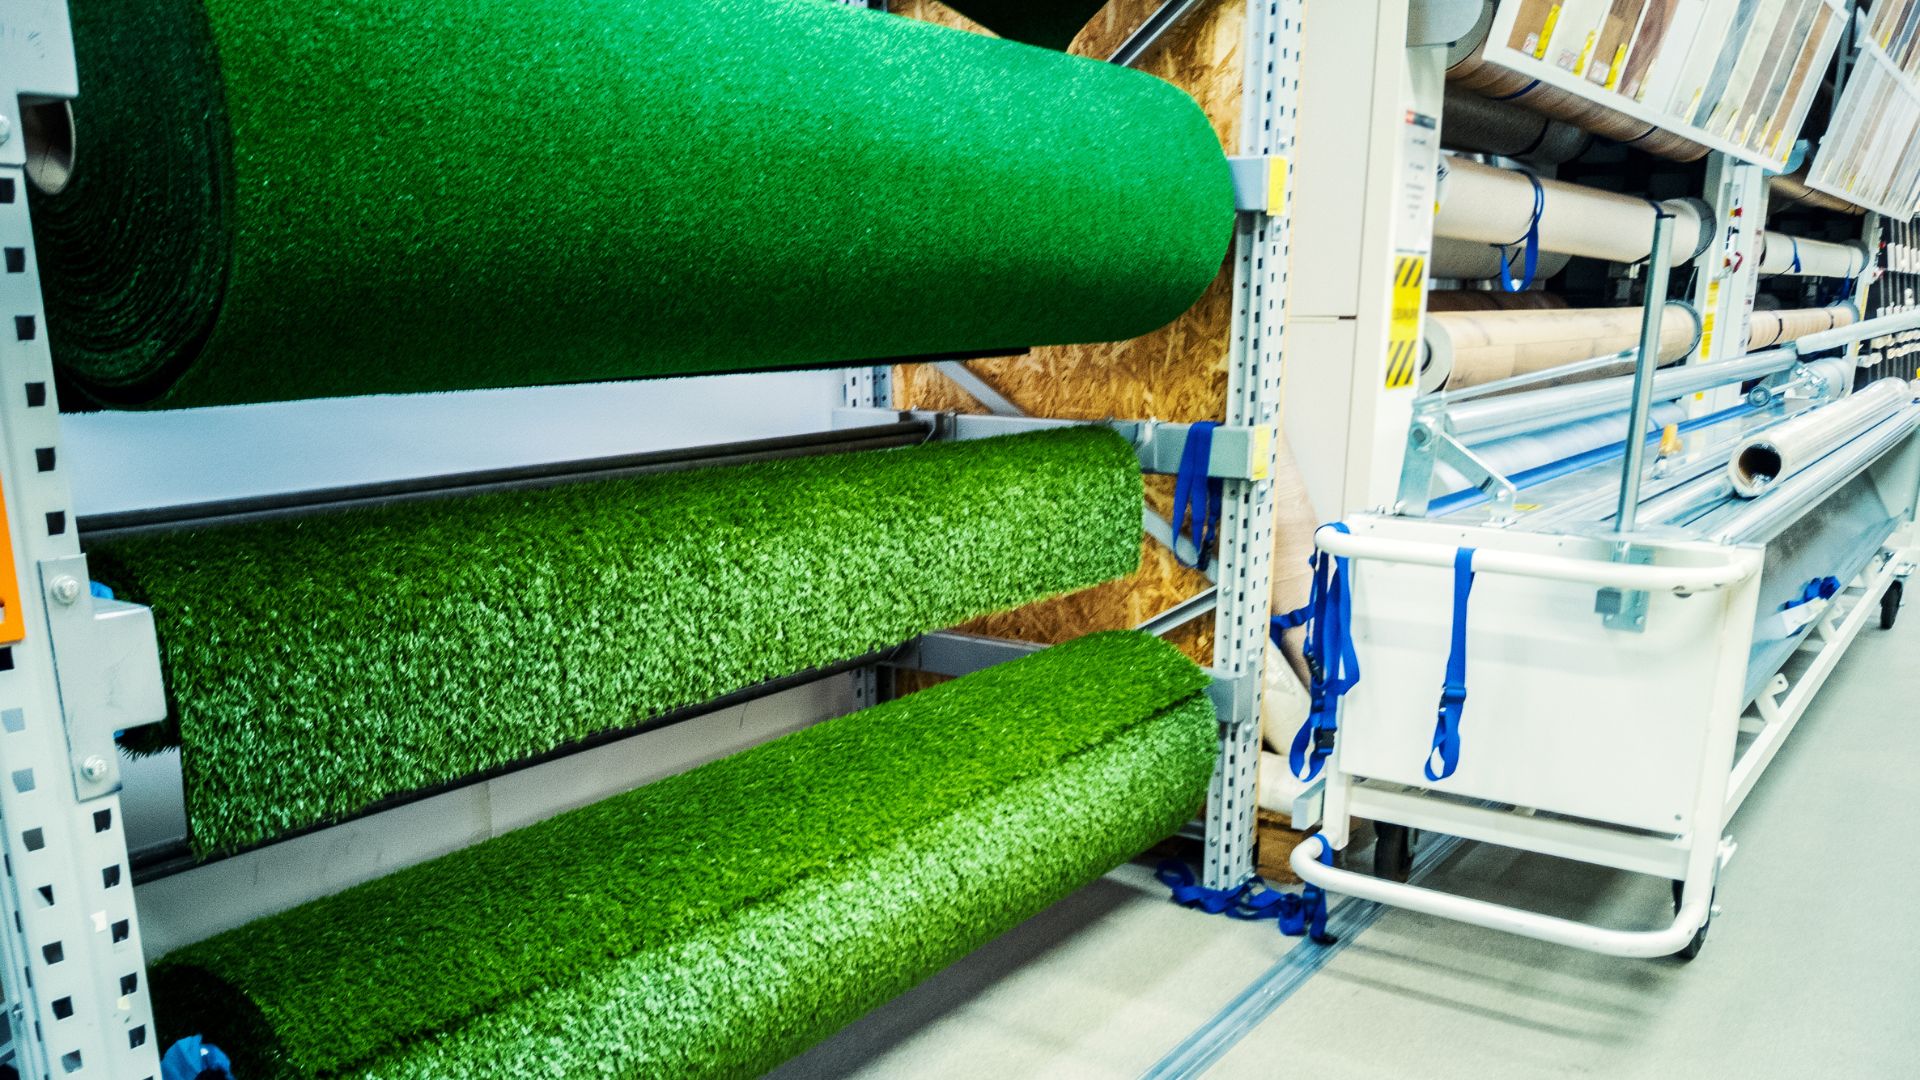 Rolled artificial grass carpet. Exterior element